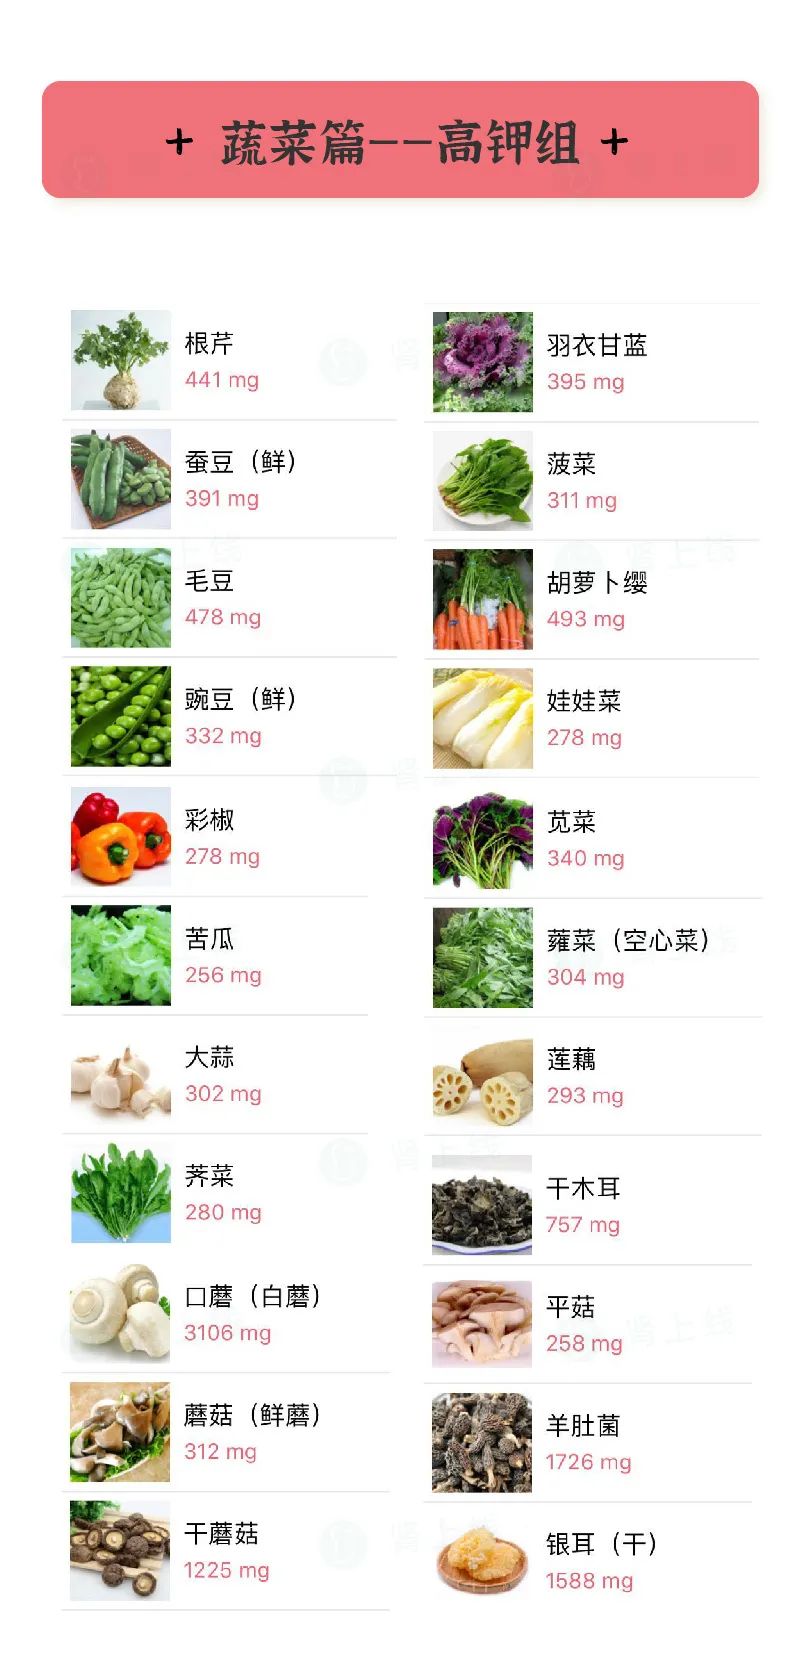 uptodate本文食物数据来源:最新版中国食物成分表(第6版)ps:昨天发